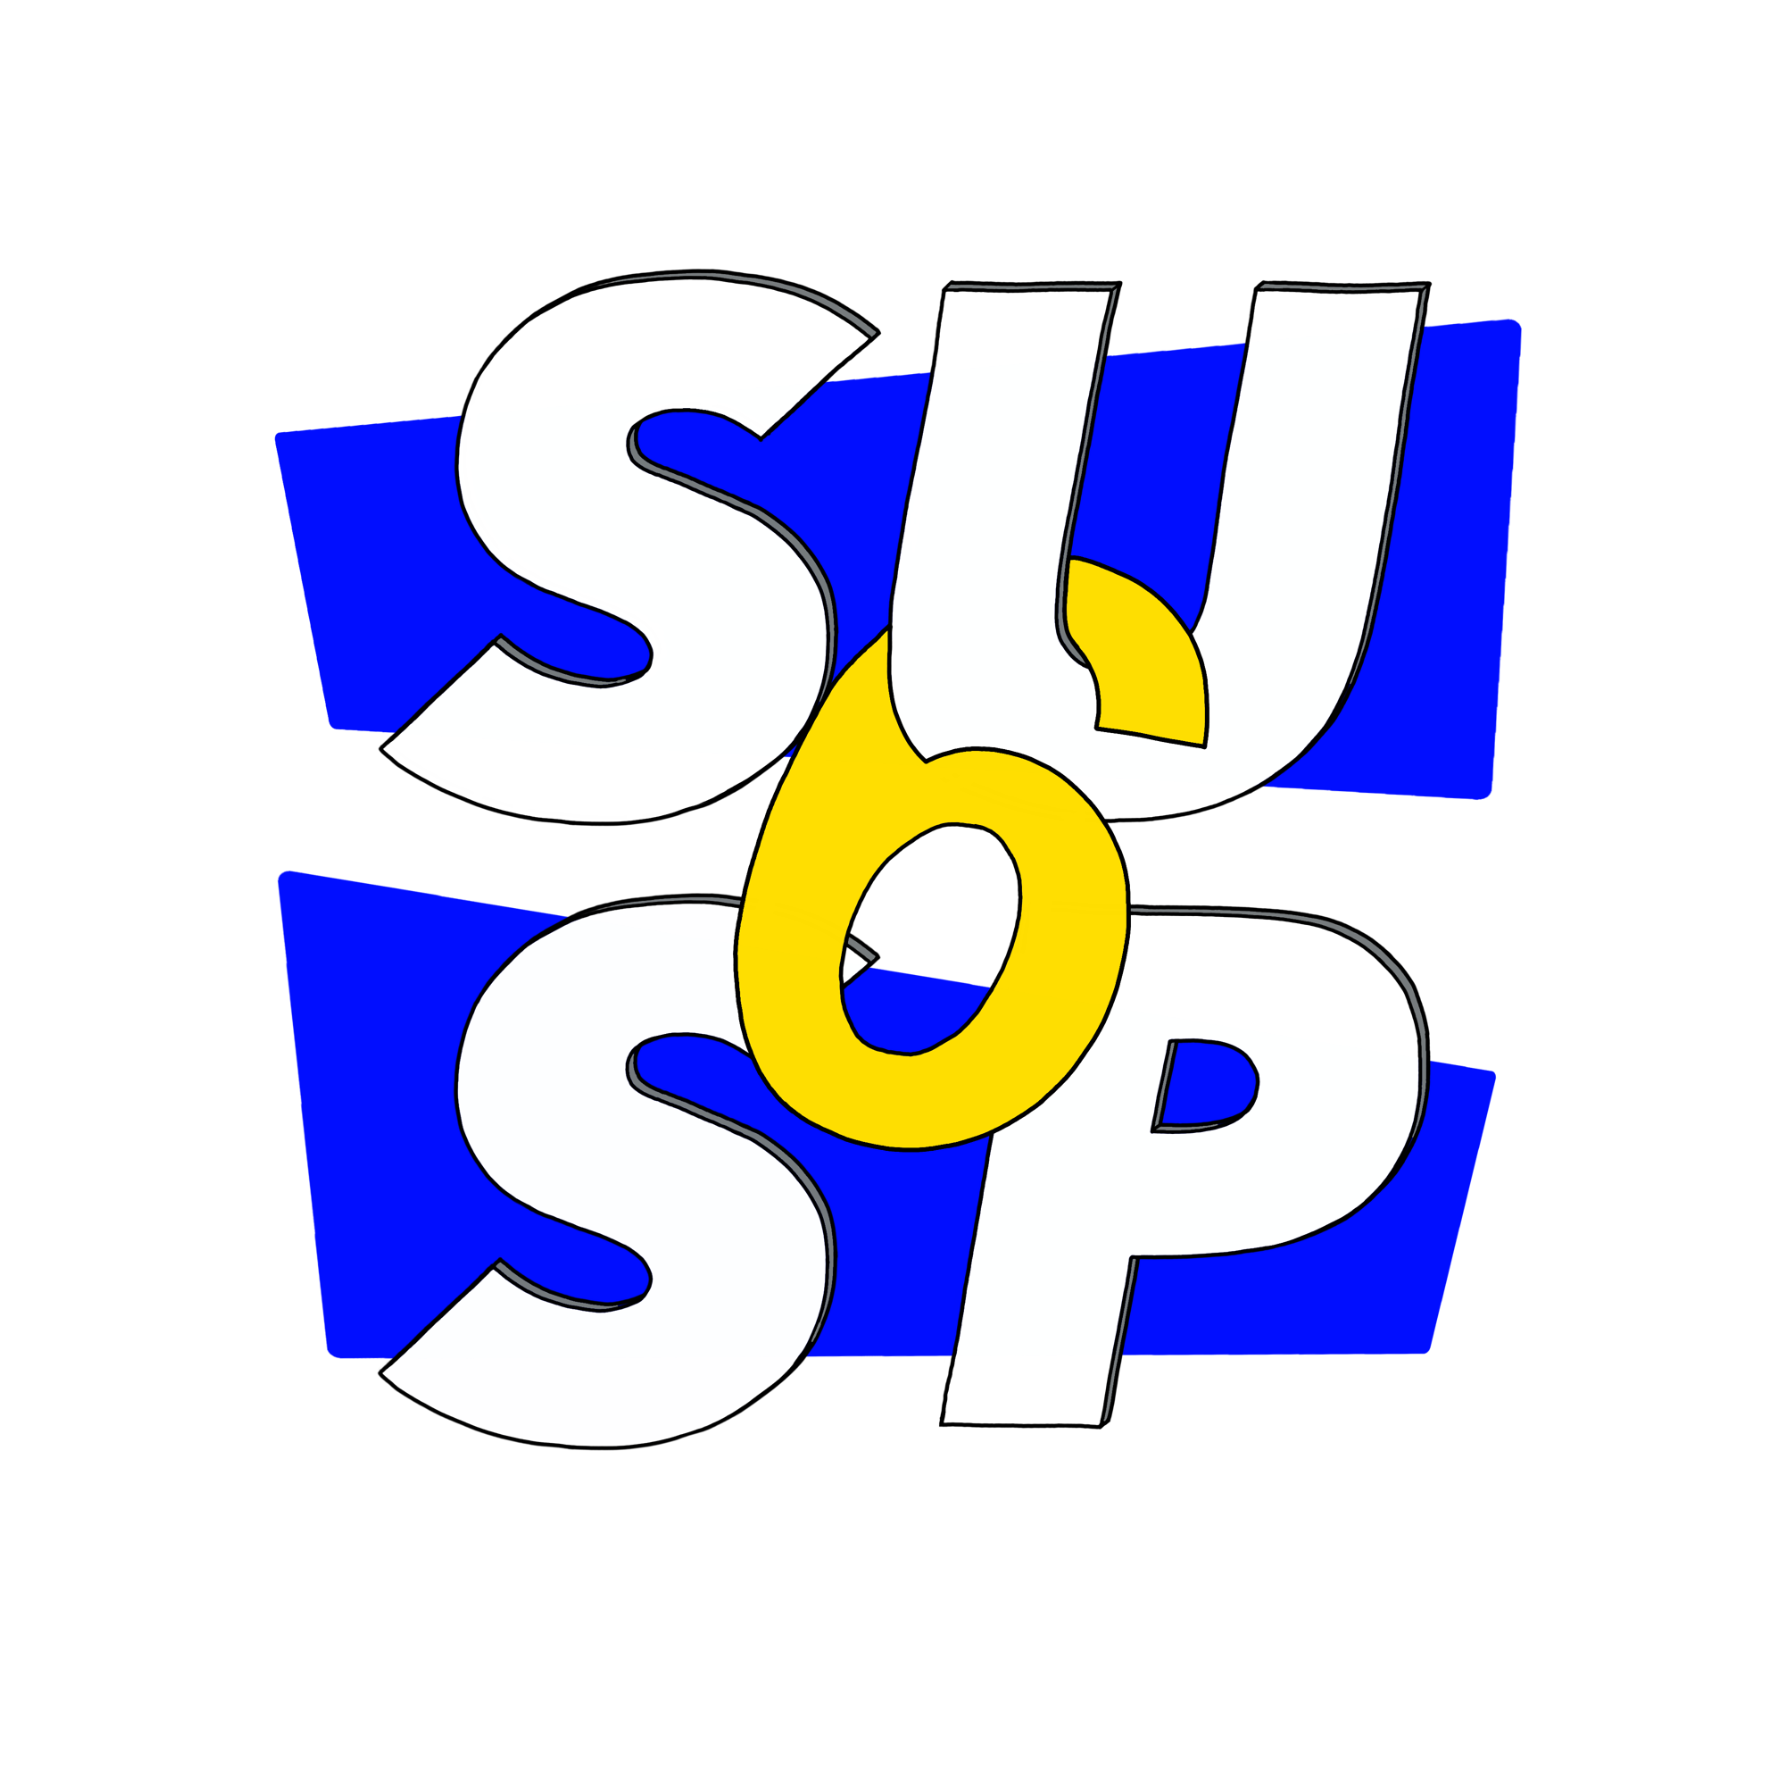 logo SU.png